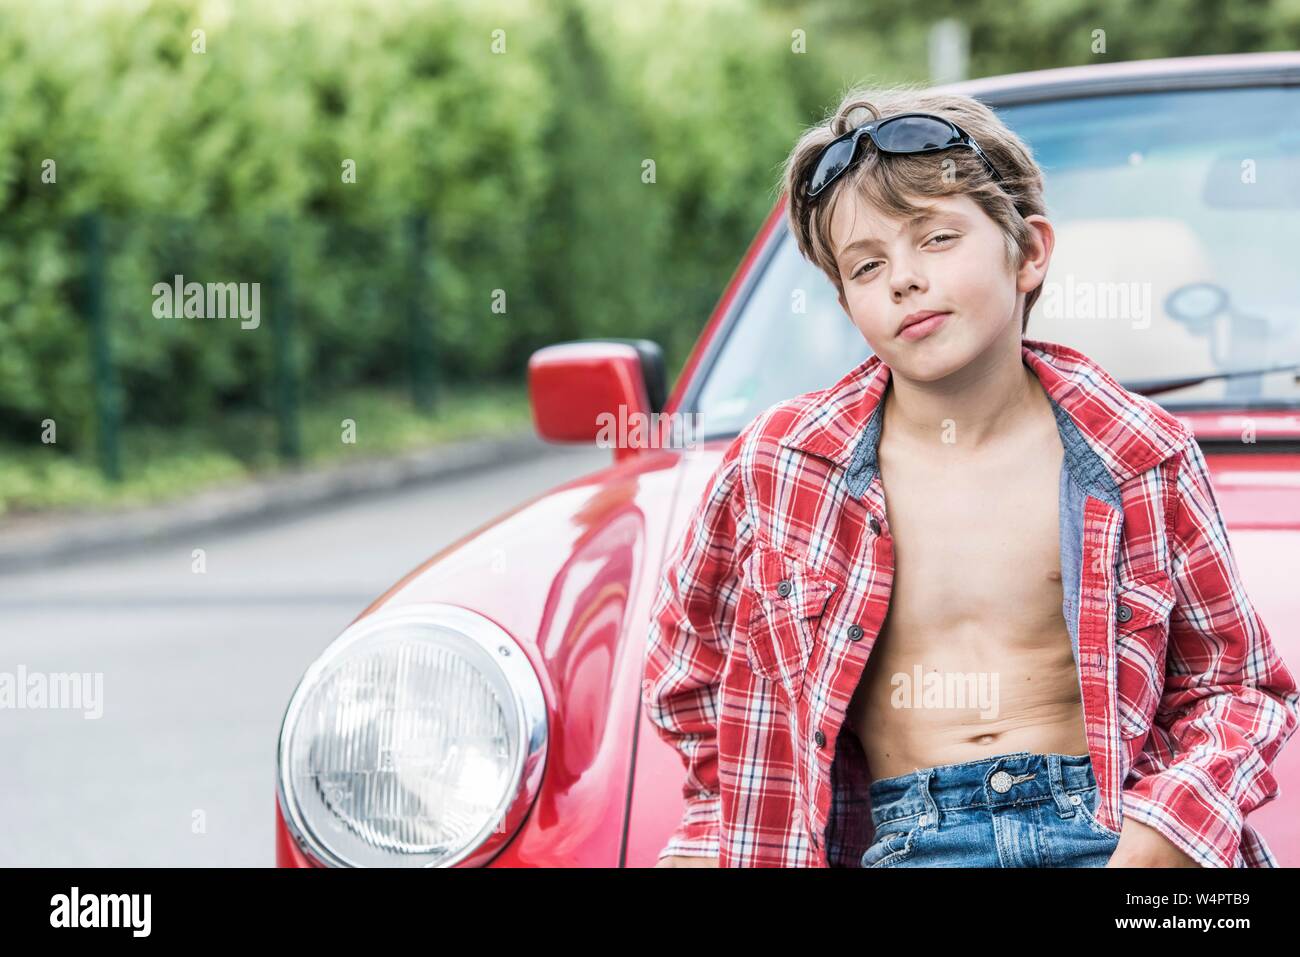 Garçon, 10 ans, avec des lunettes de soleil et chemise à carreaux s'appuie sur une voiture rouge et l'air cool dans l'appareil photo, Allemagne Banque D'Images